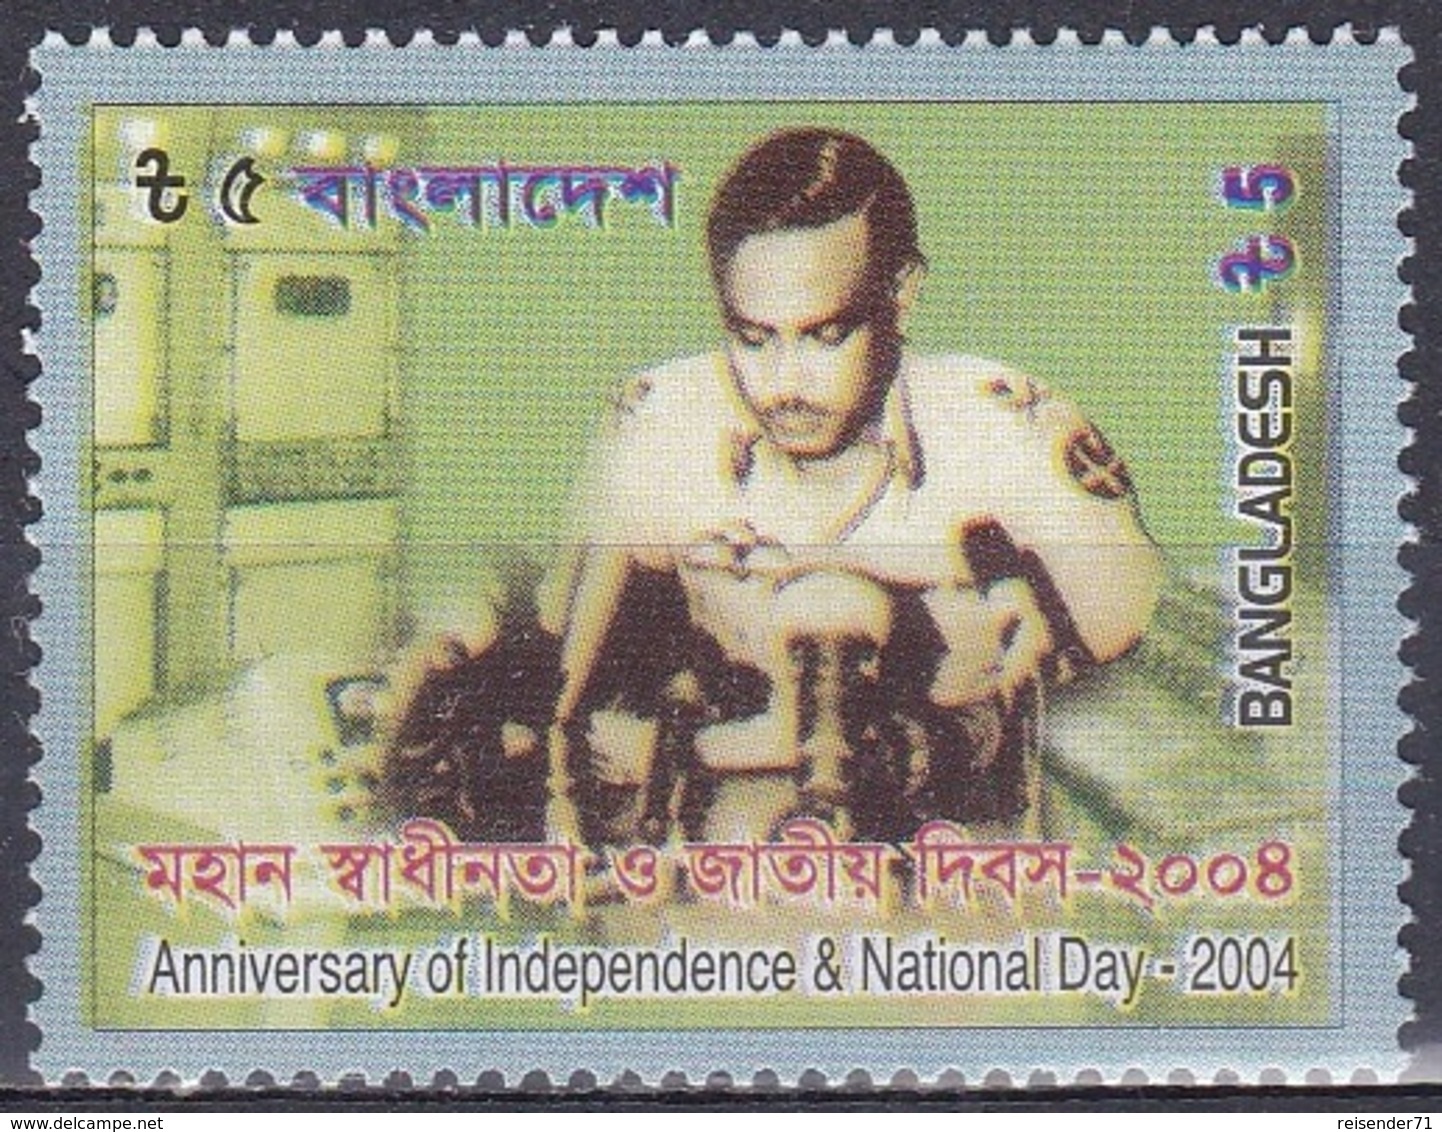 Bangladesch Bangladesh 2004 Geschichte History Unabhängigkeit Independence Nationalfeiertag National Holiday, Mi. 831 ** - Bangladesch